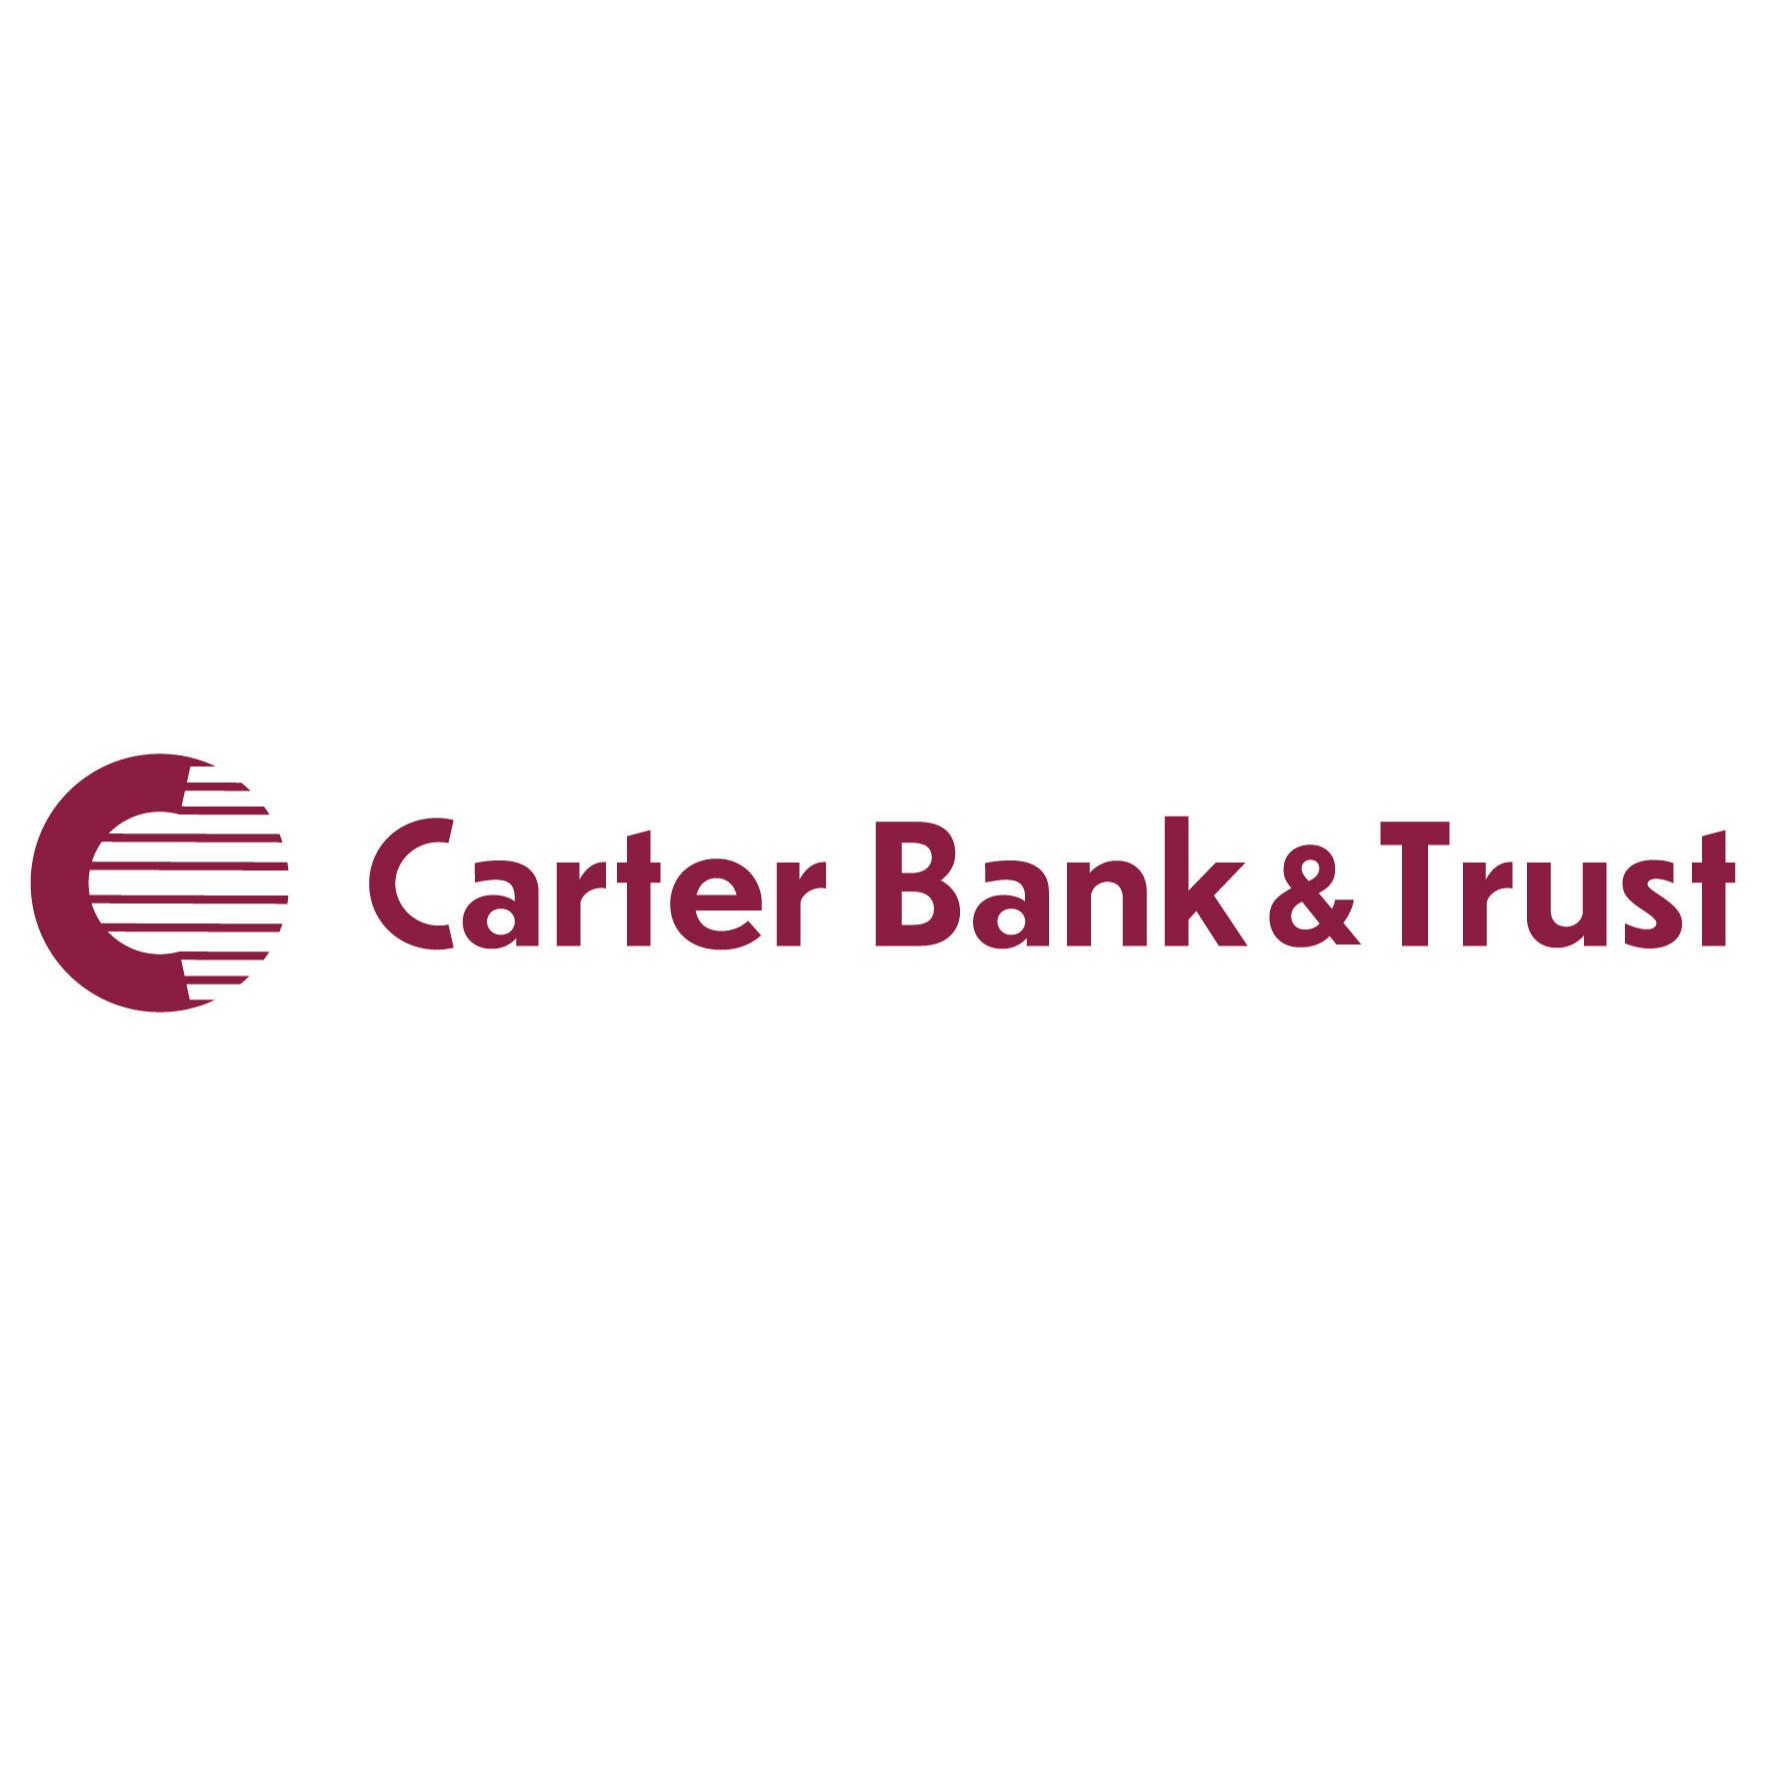 Carter Bank & Trust - Danville, VA 24540 - (434)793-3200 | ShowMeLocal.com